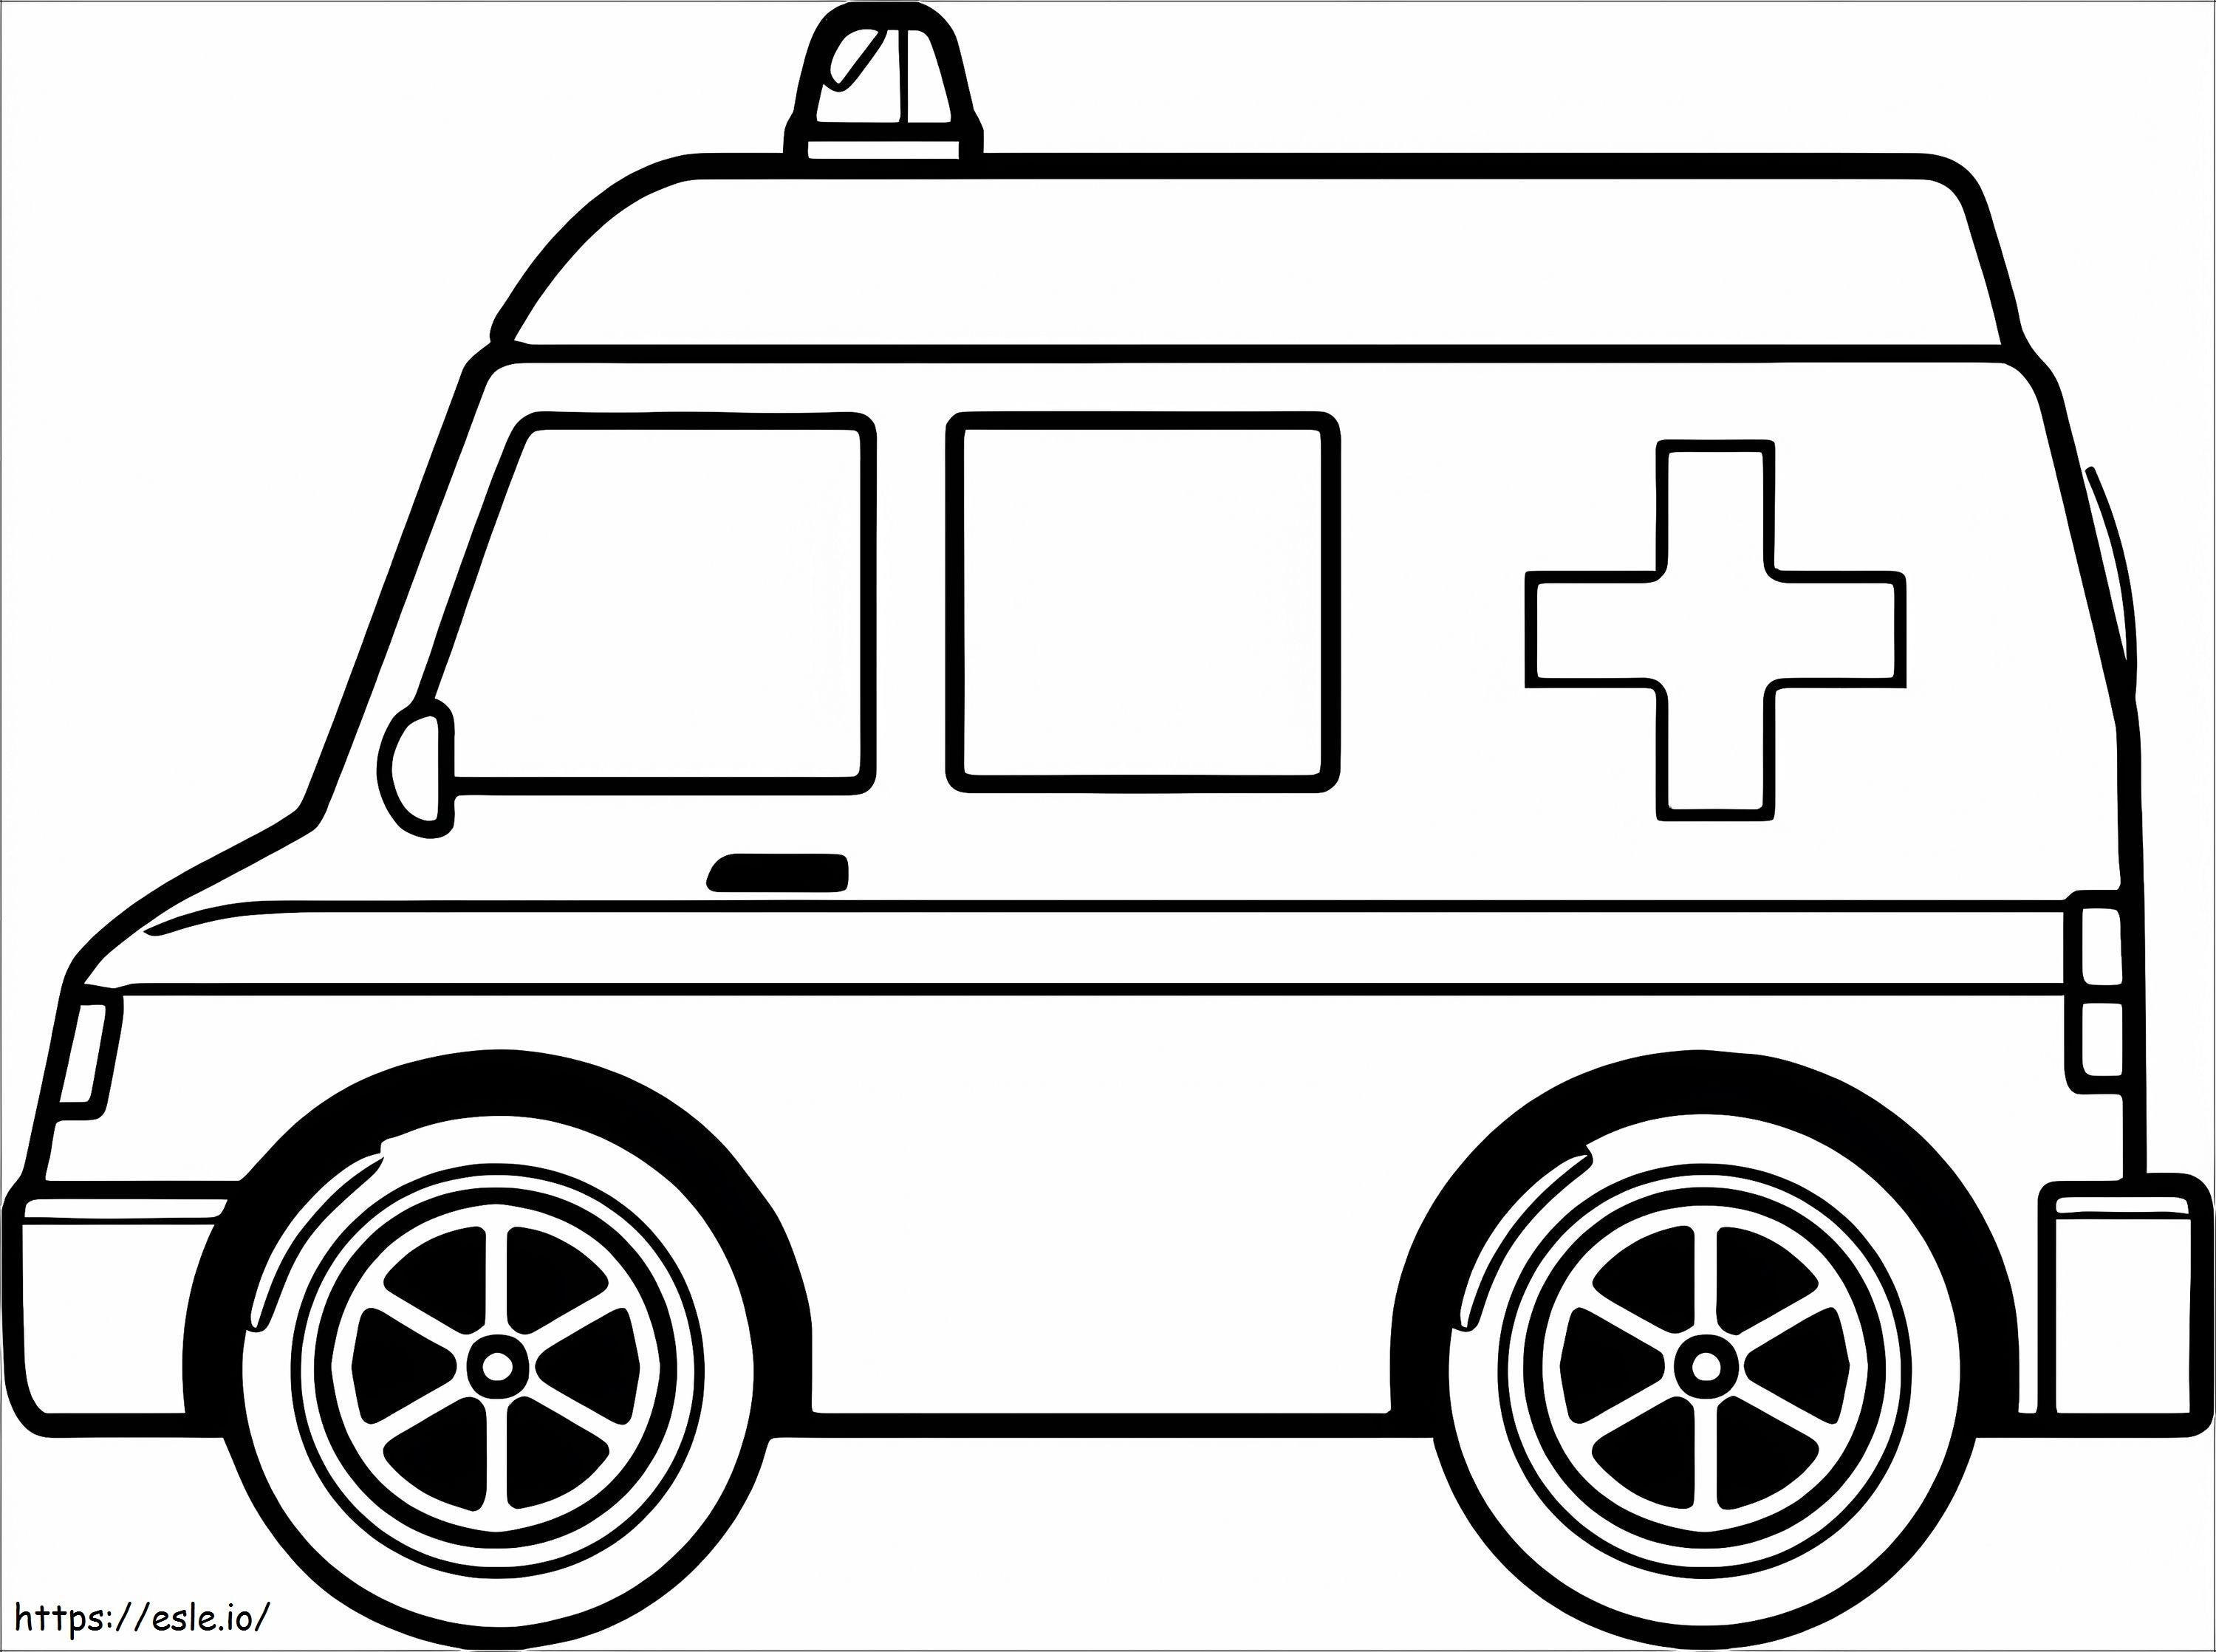 Krankenwagen 20 ausmalbilder